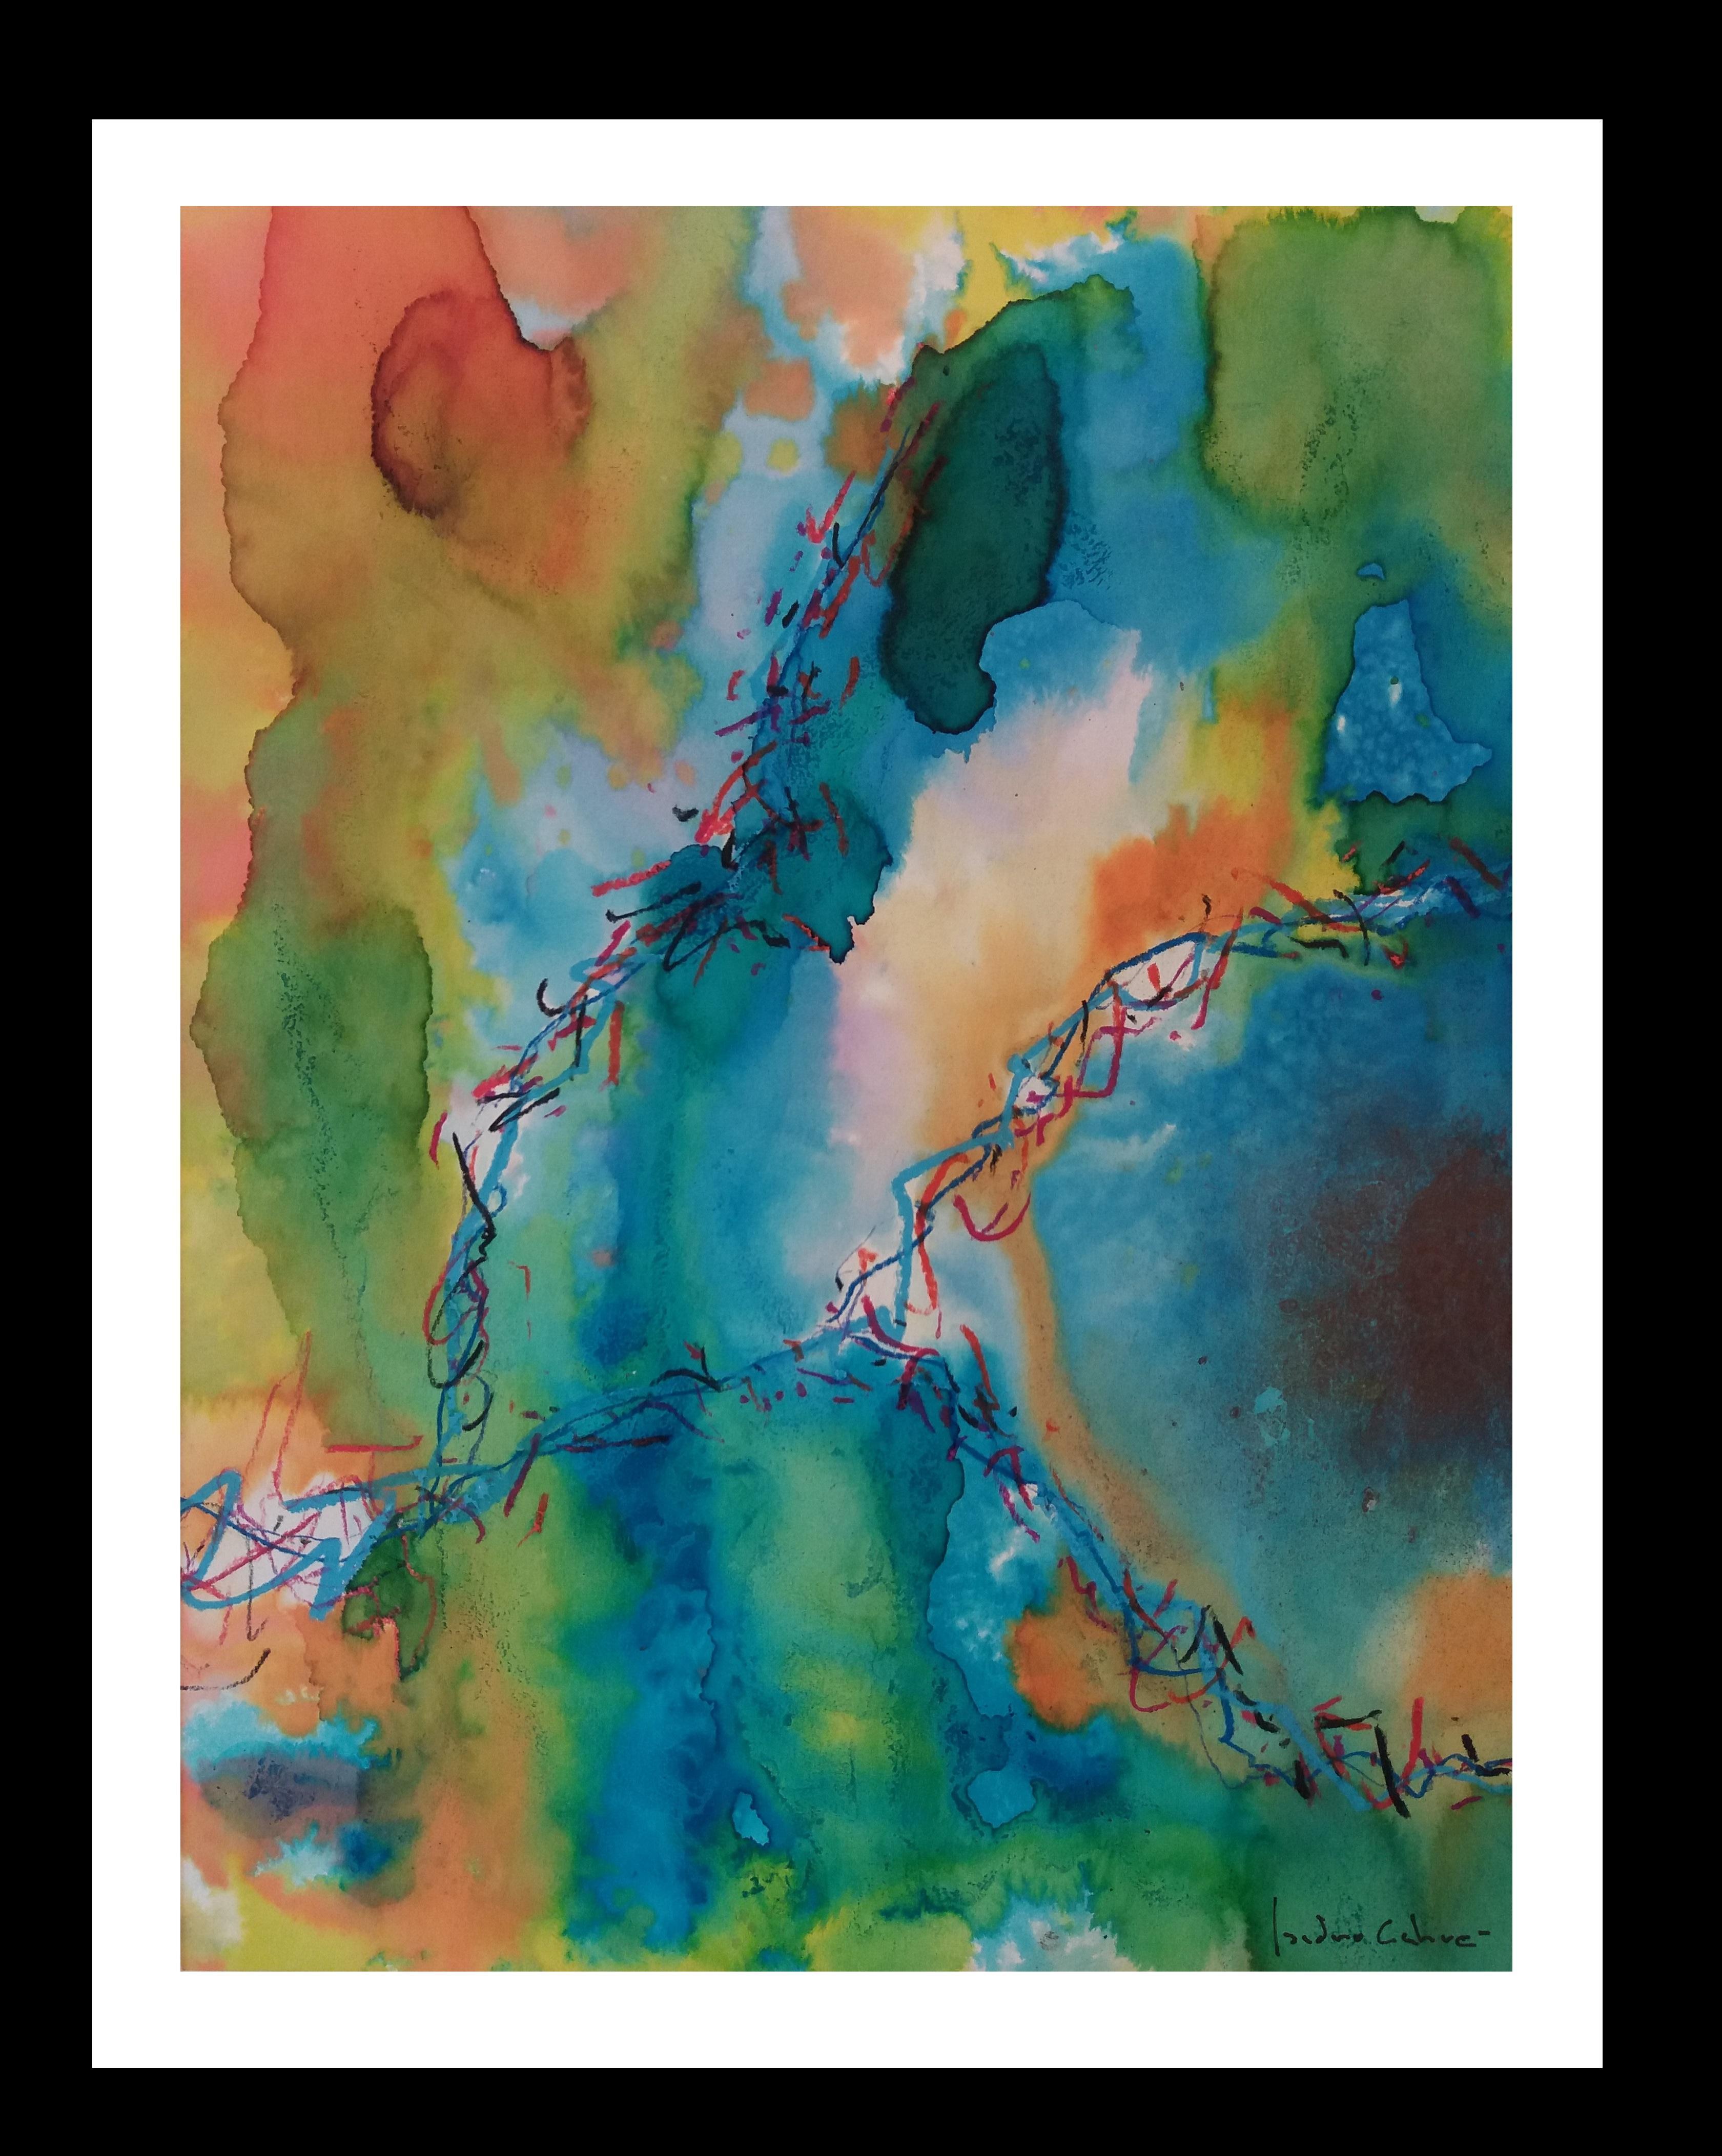 -Verts et roses - peinture acrylique abstraite originale sur papier 
Artistics de l'artiste espagnol ISIDRO CAHUE.
Acrylique sur papier
Un état parfait

La personnalité de l'artiste se reflète dans différents domaines de l'art. Son souci du sujet,